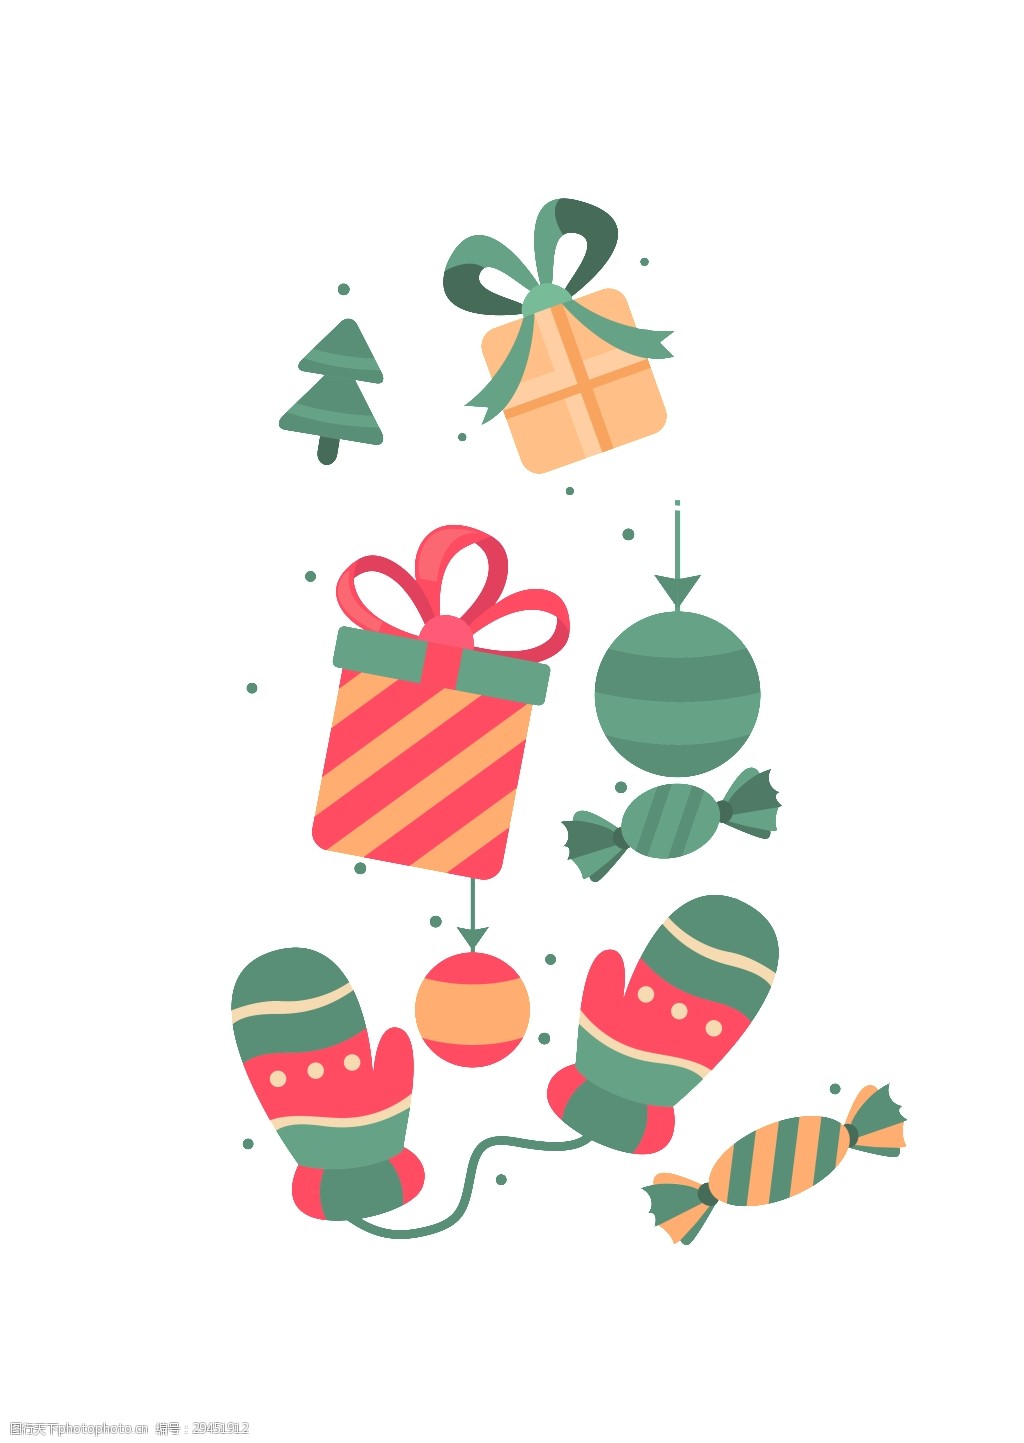 冬季圣诞节小礼物卡通矢量素材card 礼物 平面素材 设计素材 圣诞树